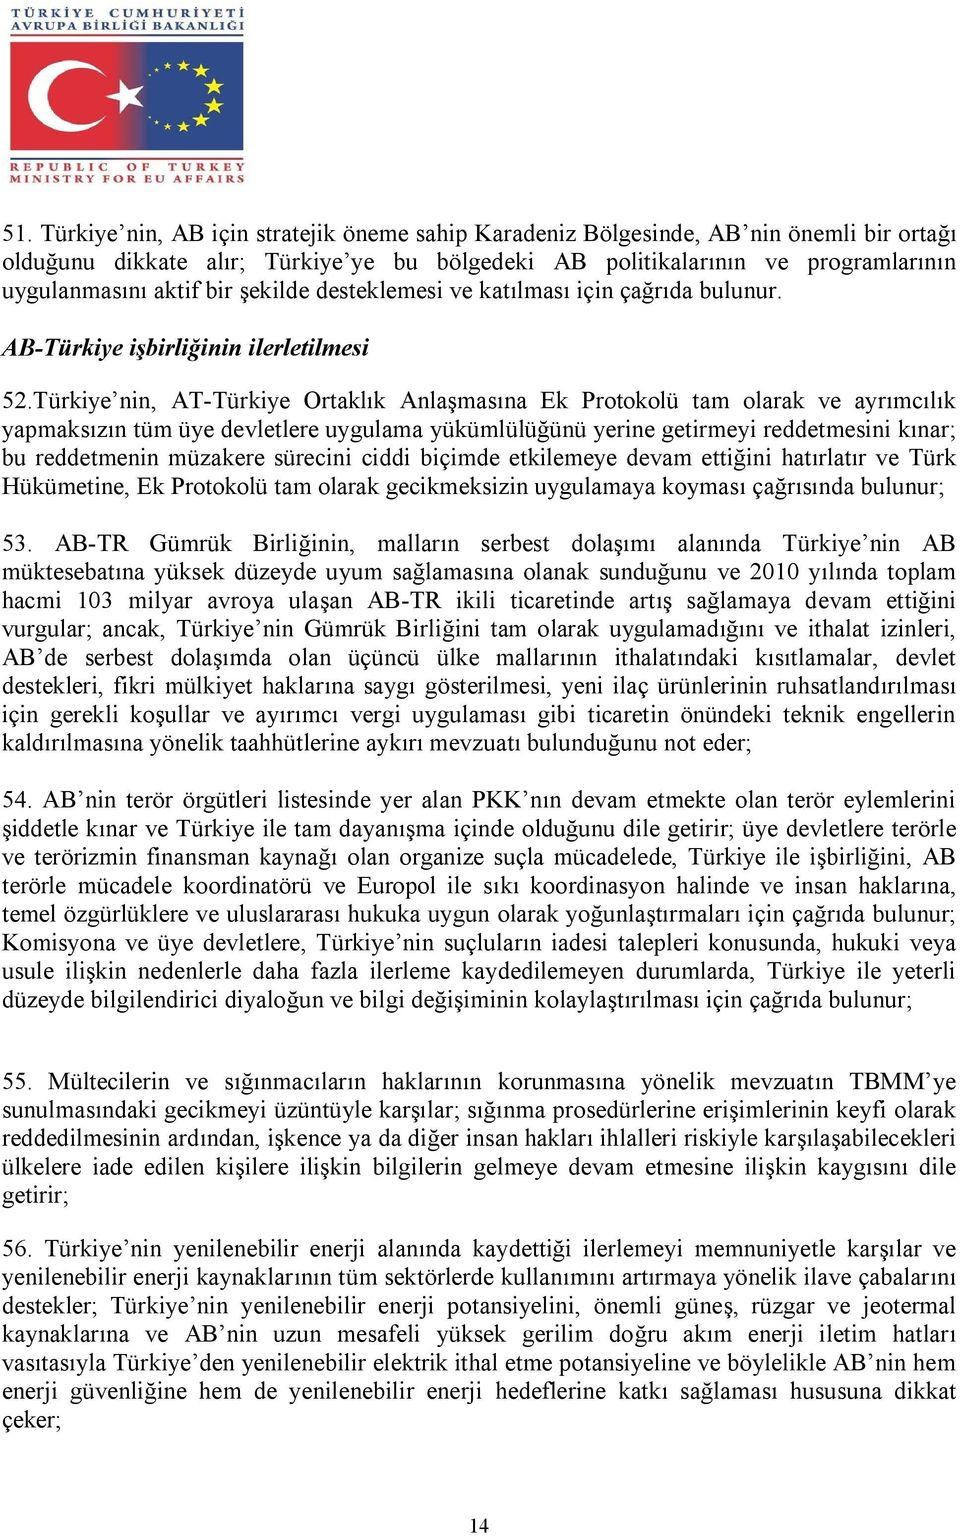 Türkiye nin, AT-Türkiye Ortaklık Anlaşmasına Ek Protokolü tam olarak ve ayrımcılık yapmaksızın tüm üye devletlere uygulama yükümlülüğünü yerine getirmeyi reddetmesini kınar; bu reddetmenin müzakere